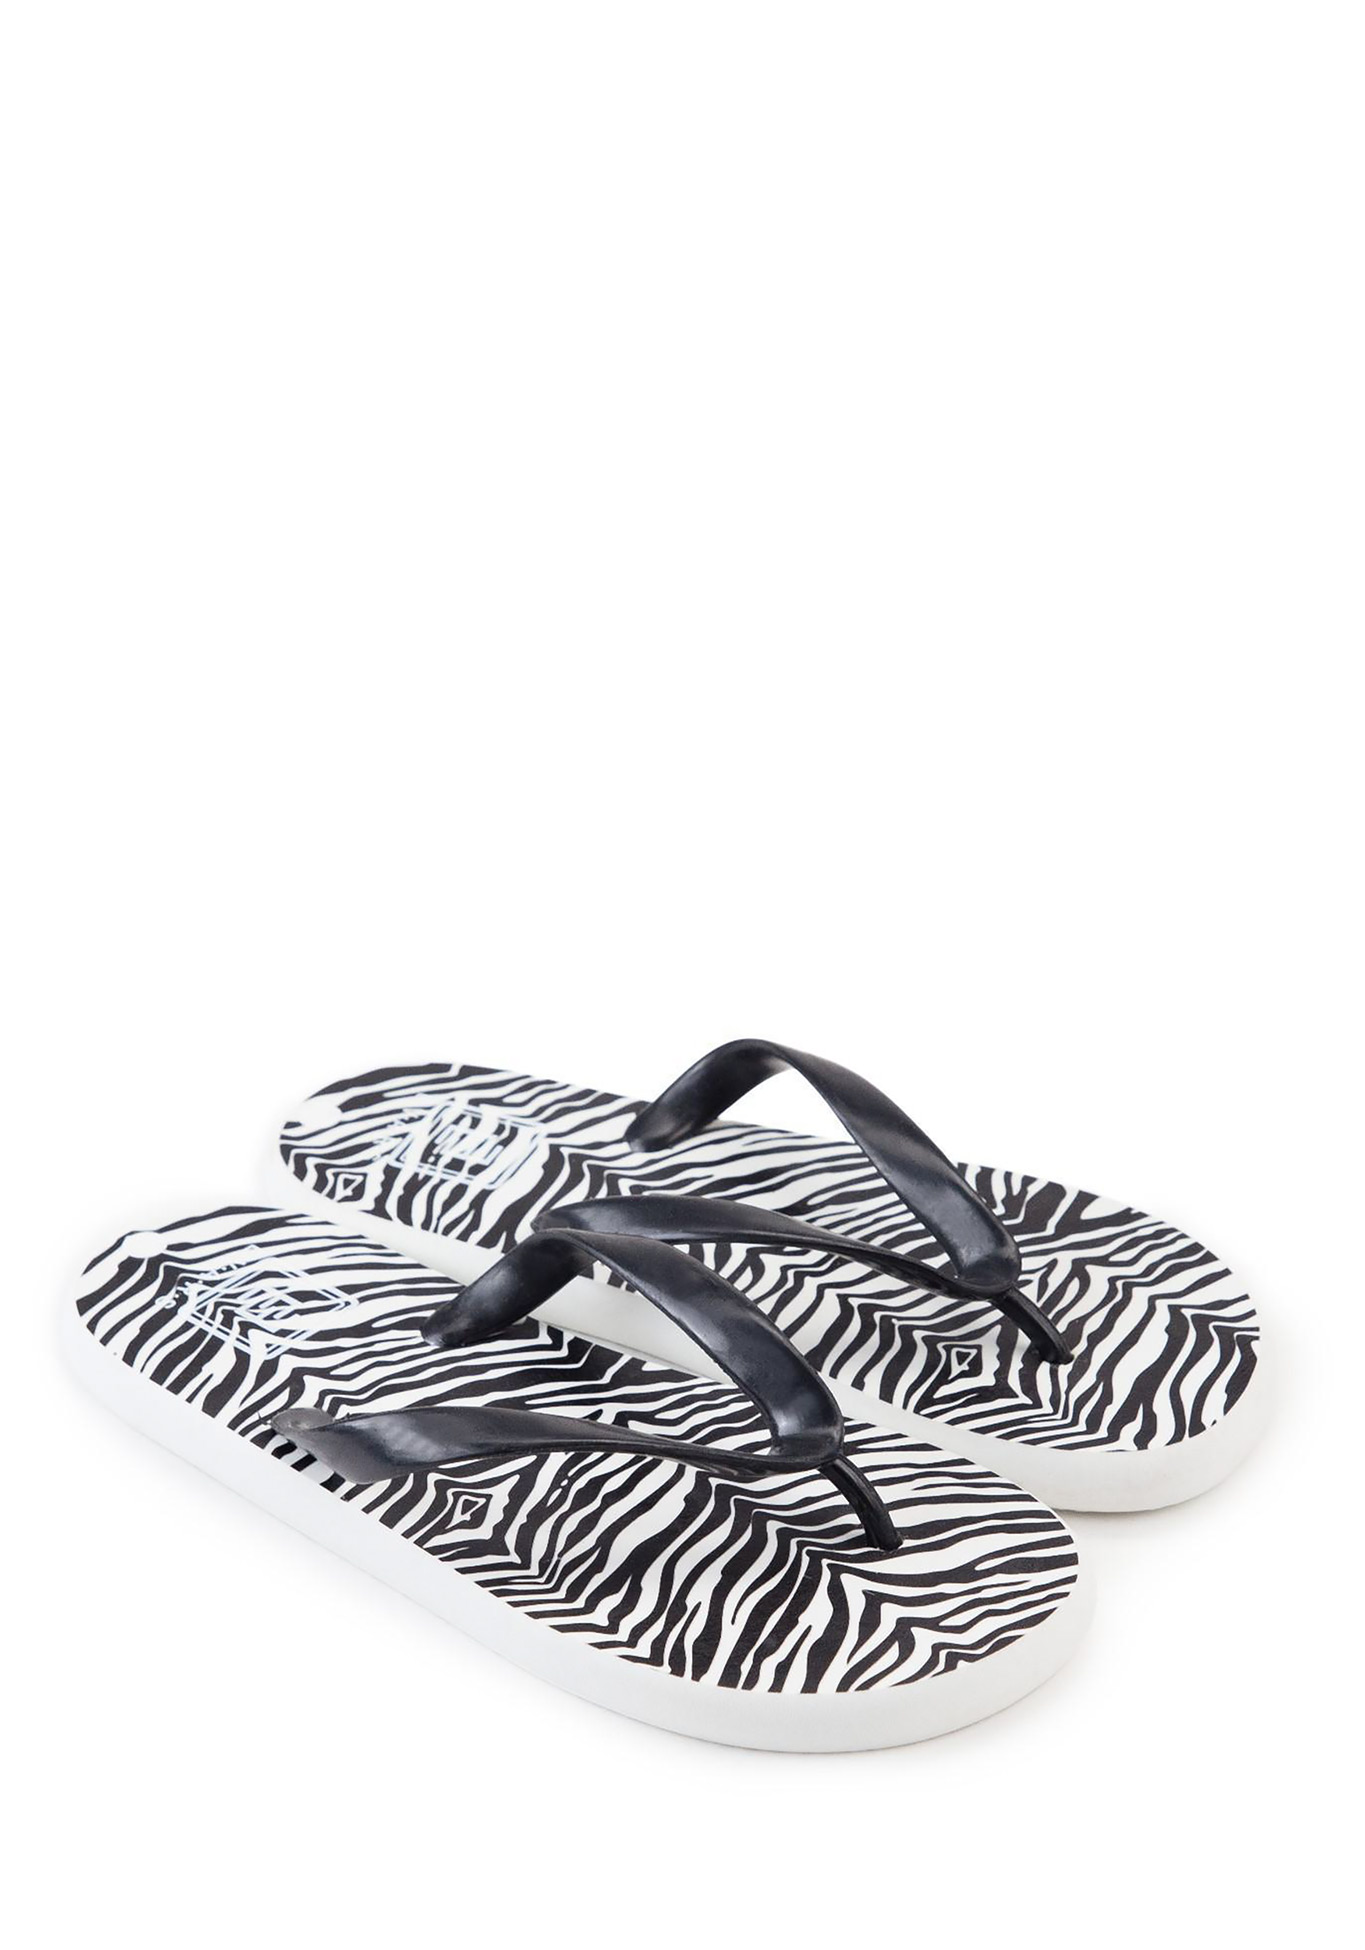 Сланцы женские "Zebra", размер 39, цвет белый/черный